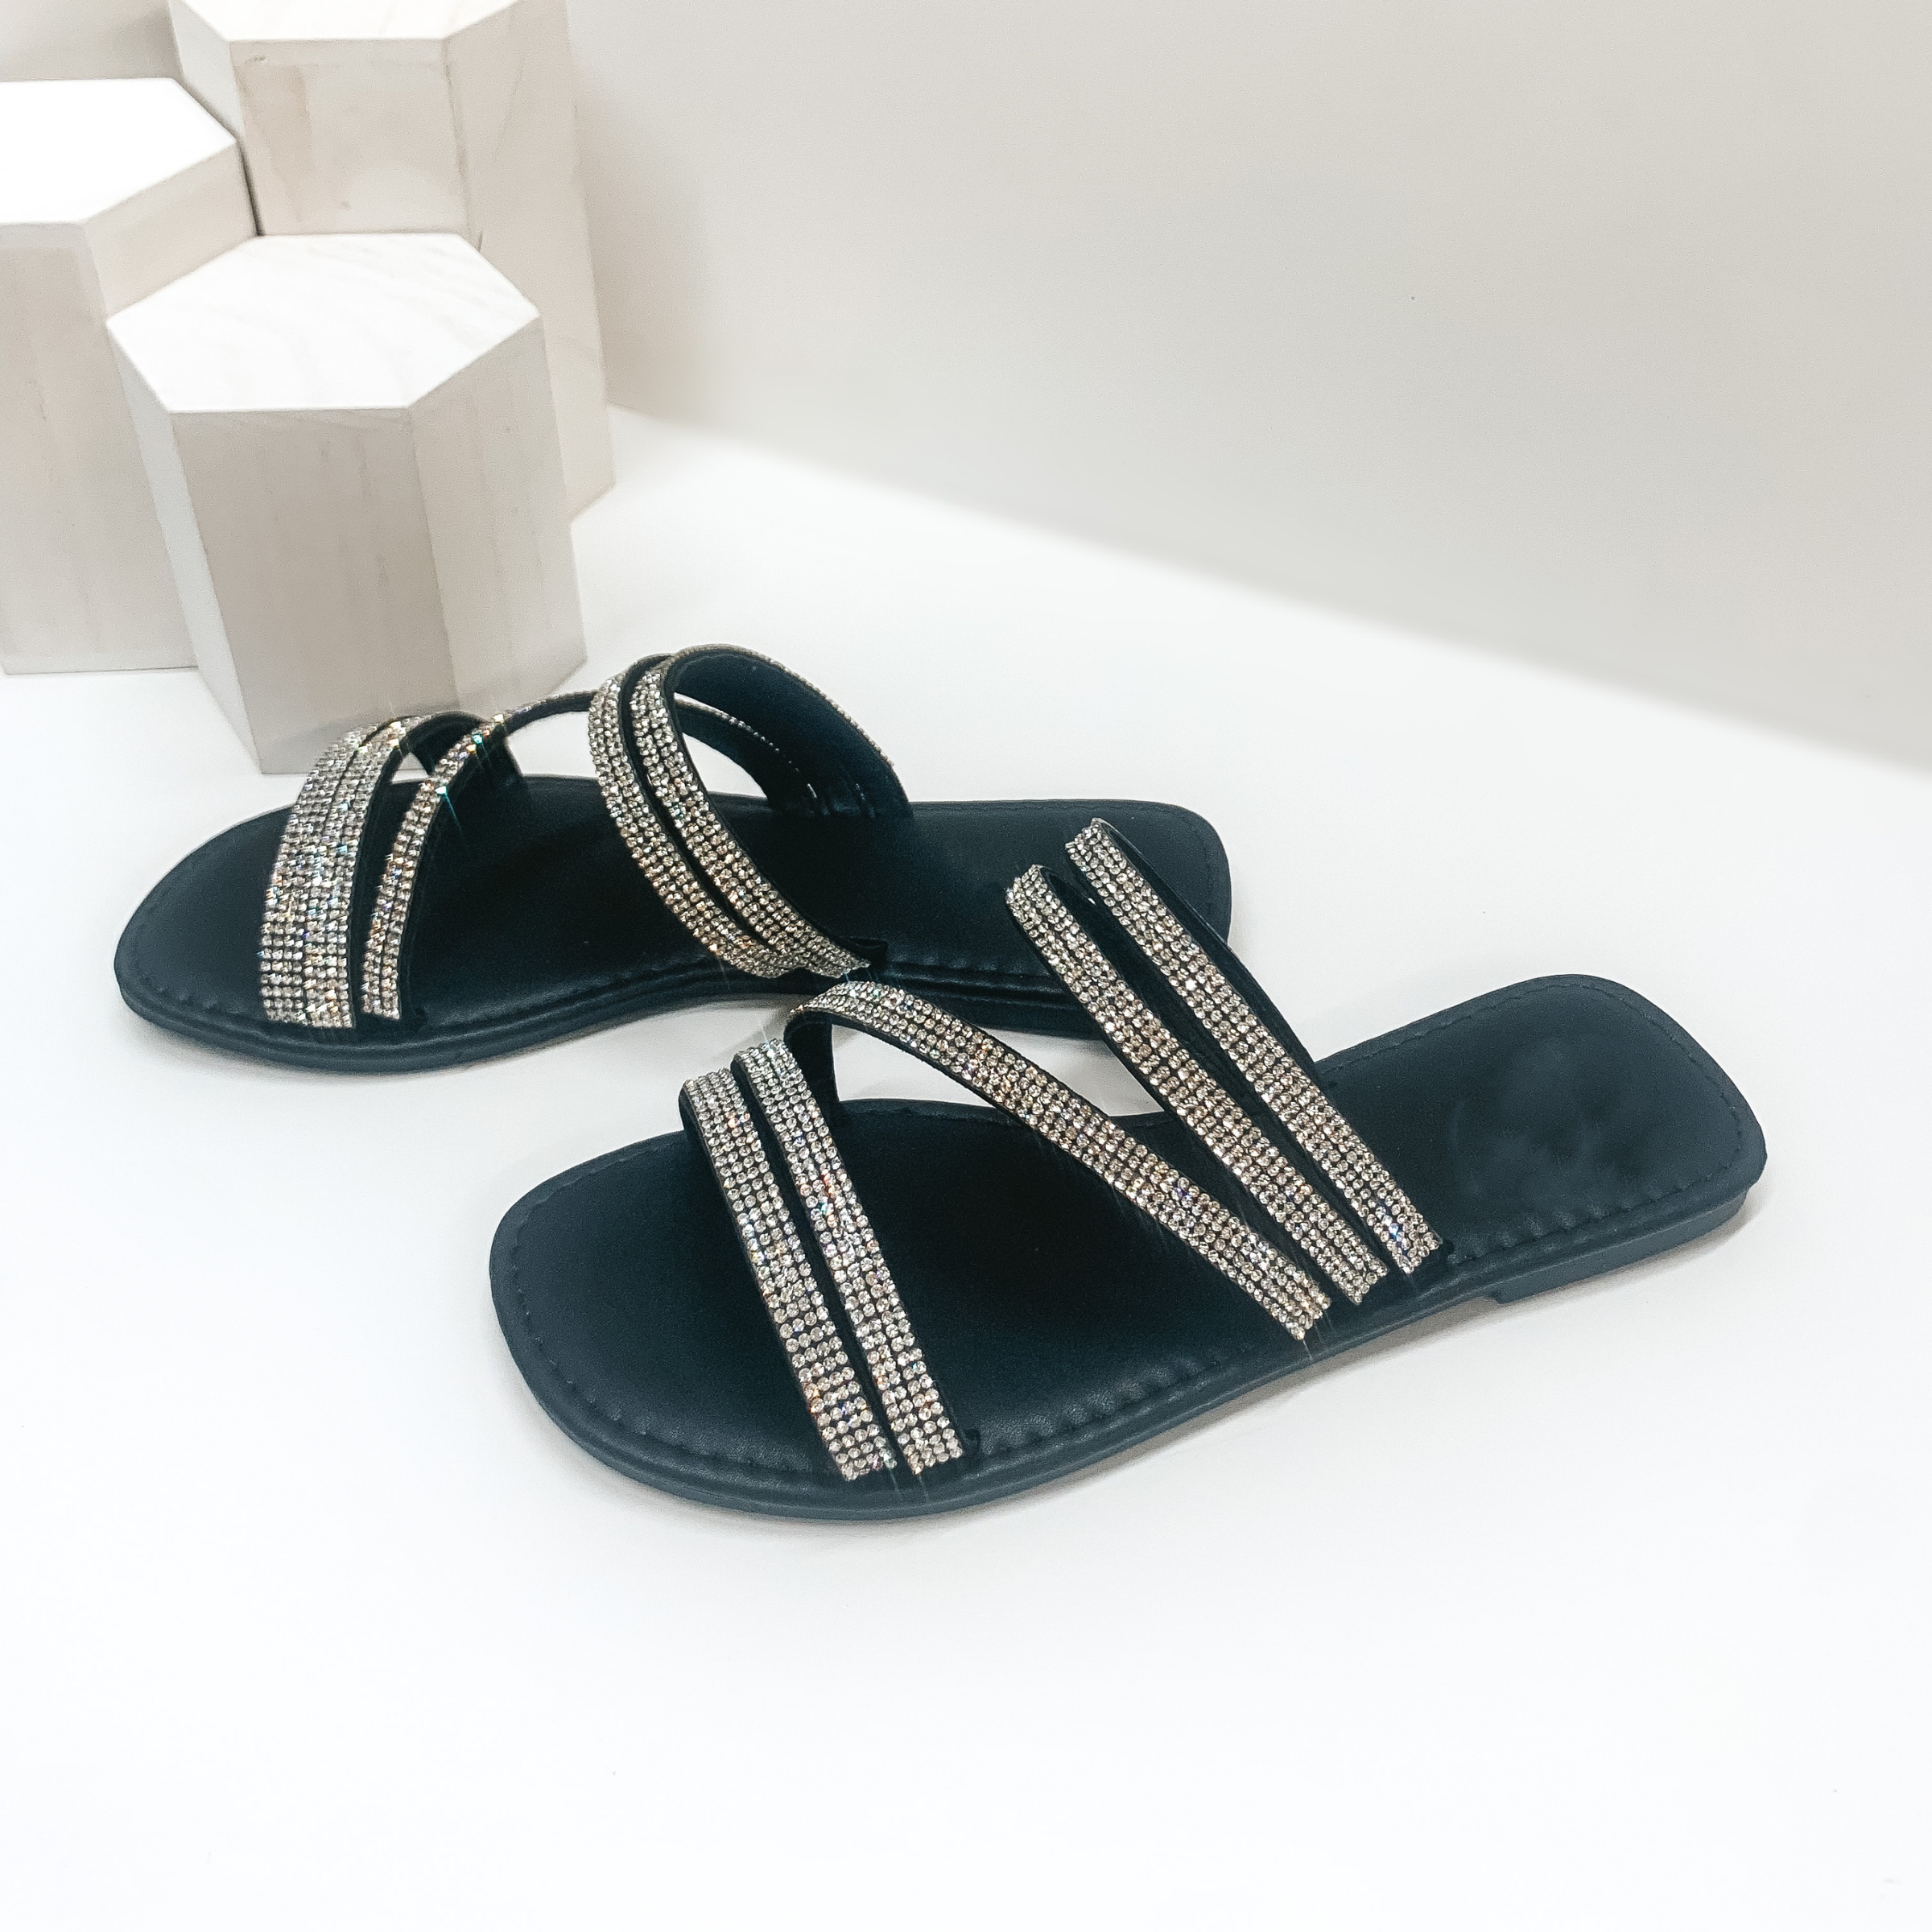 Sleek Strides Crystal Strappy Slide On Sandals in Black - Giddy Up Glamour Boutique